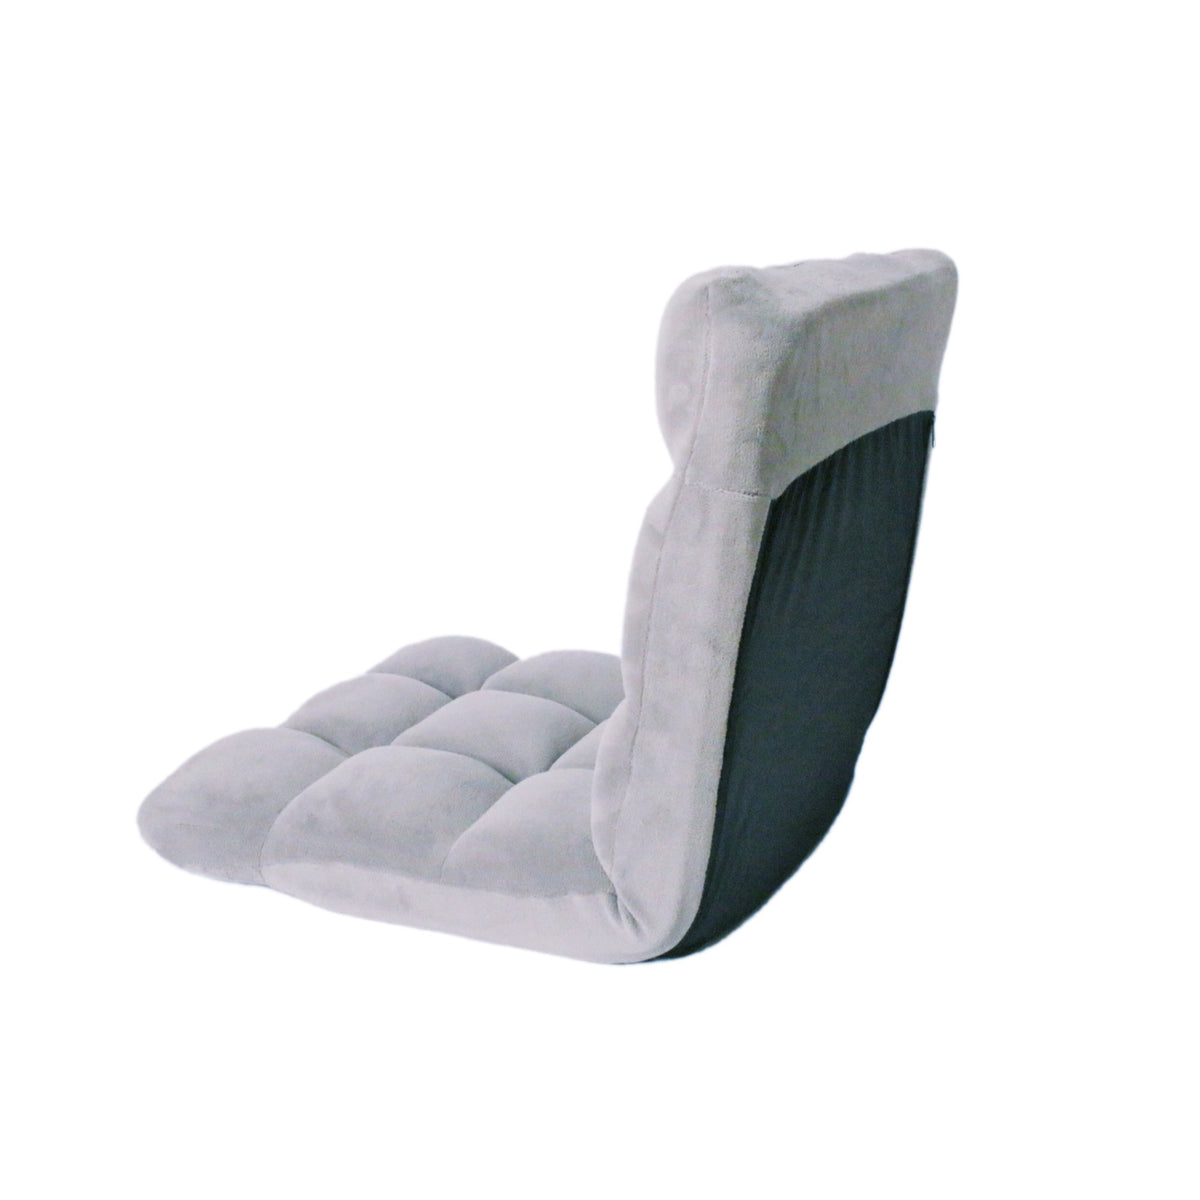 Recliner Chair - Recliner Chair